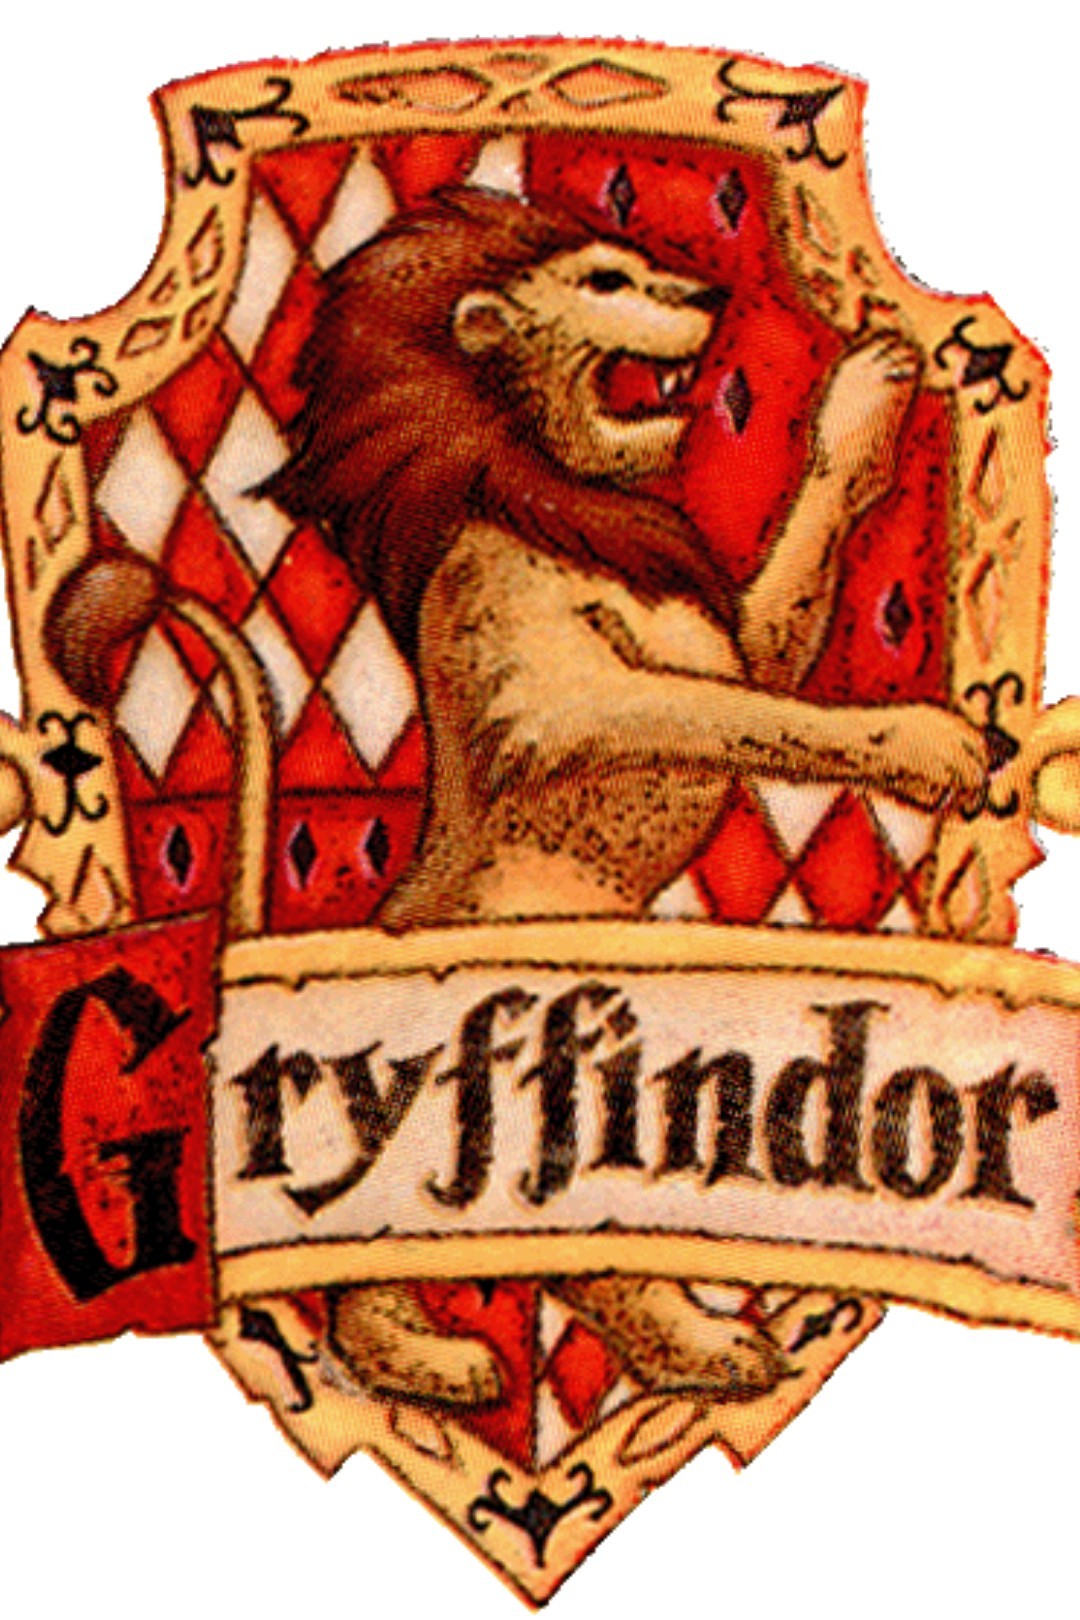 #gryffindor 
#hogwarts
#harry Potter
#harmonie Granger
#rohn Weasley
